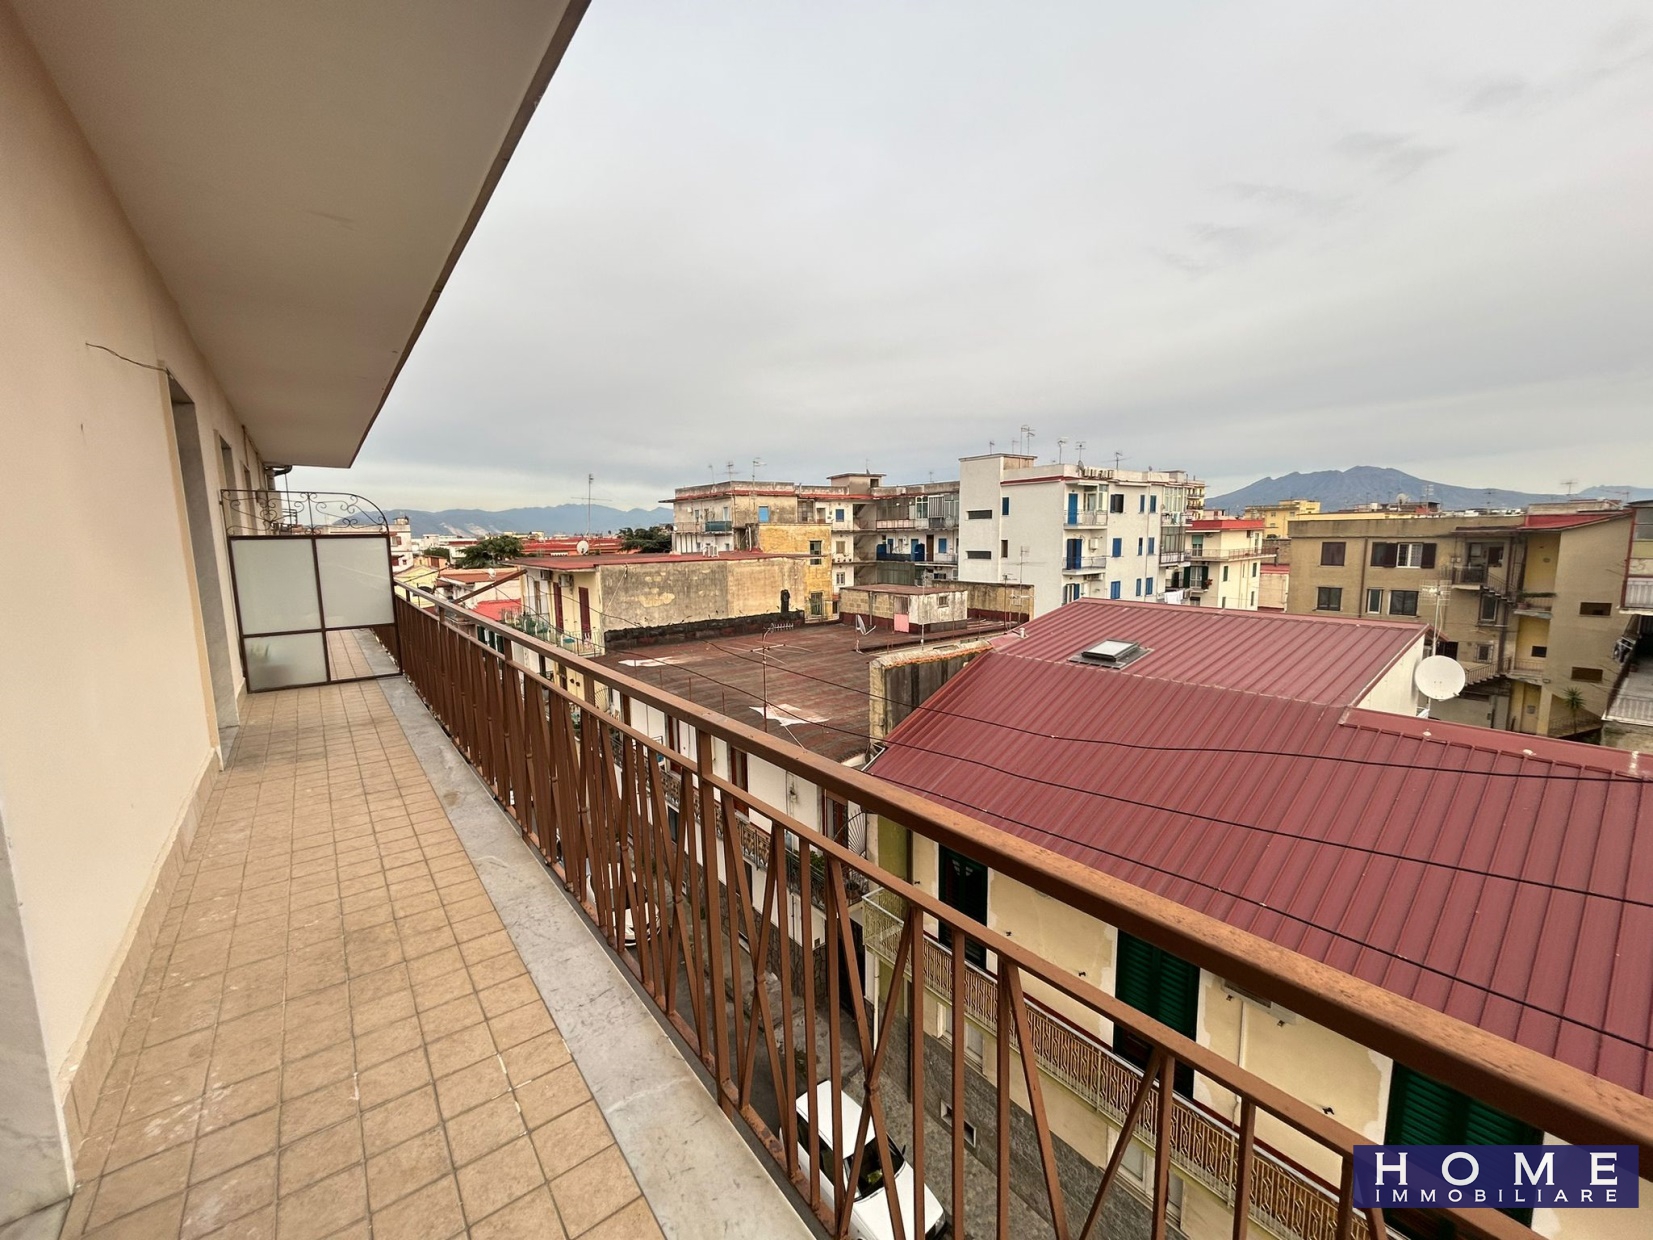 Appartamento in vendita a Cardito, 8 locali, prezzo € 143.000 | PortaleAgenzieImmobiliari.it